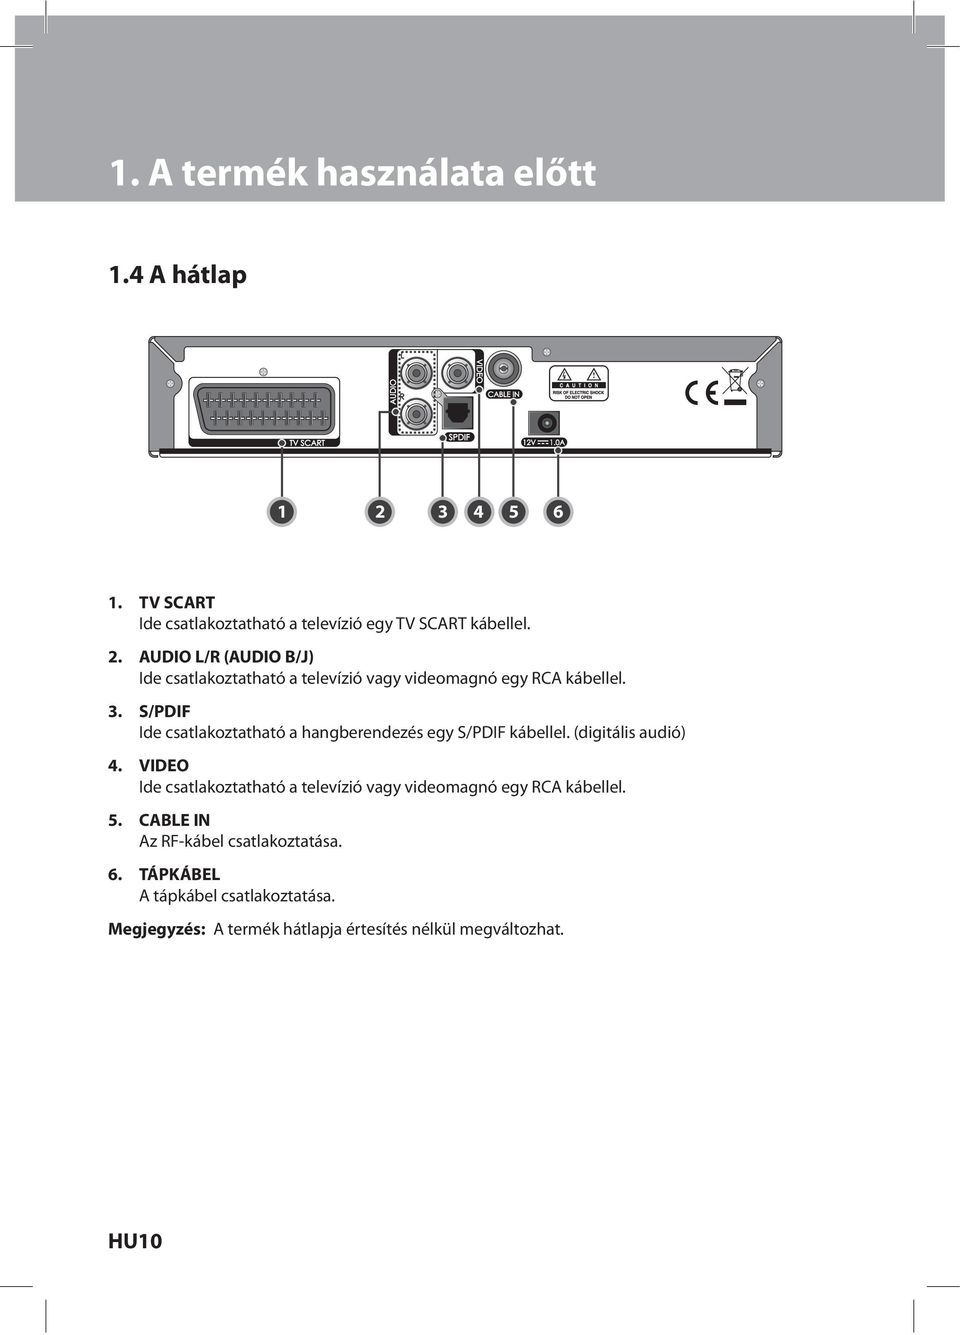 AUDIO L/R (AUDIO B/J) Ide csatlakoztatható a televízió vagy videomagnó egy RCA kábellel. 3.